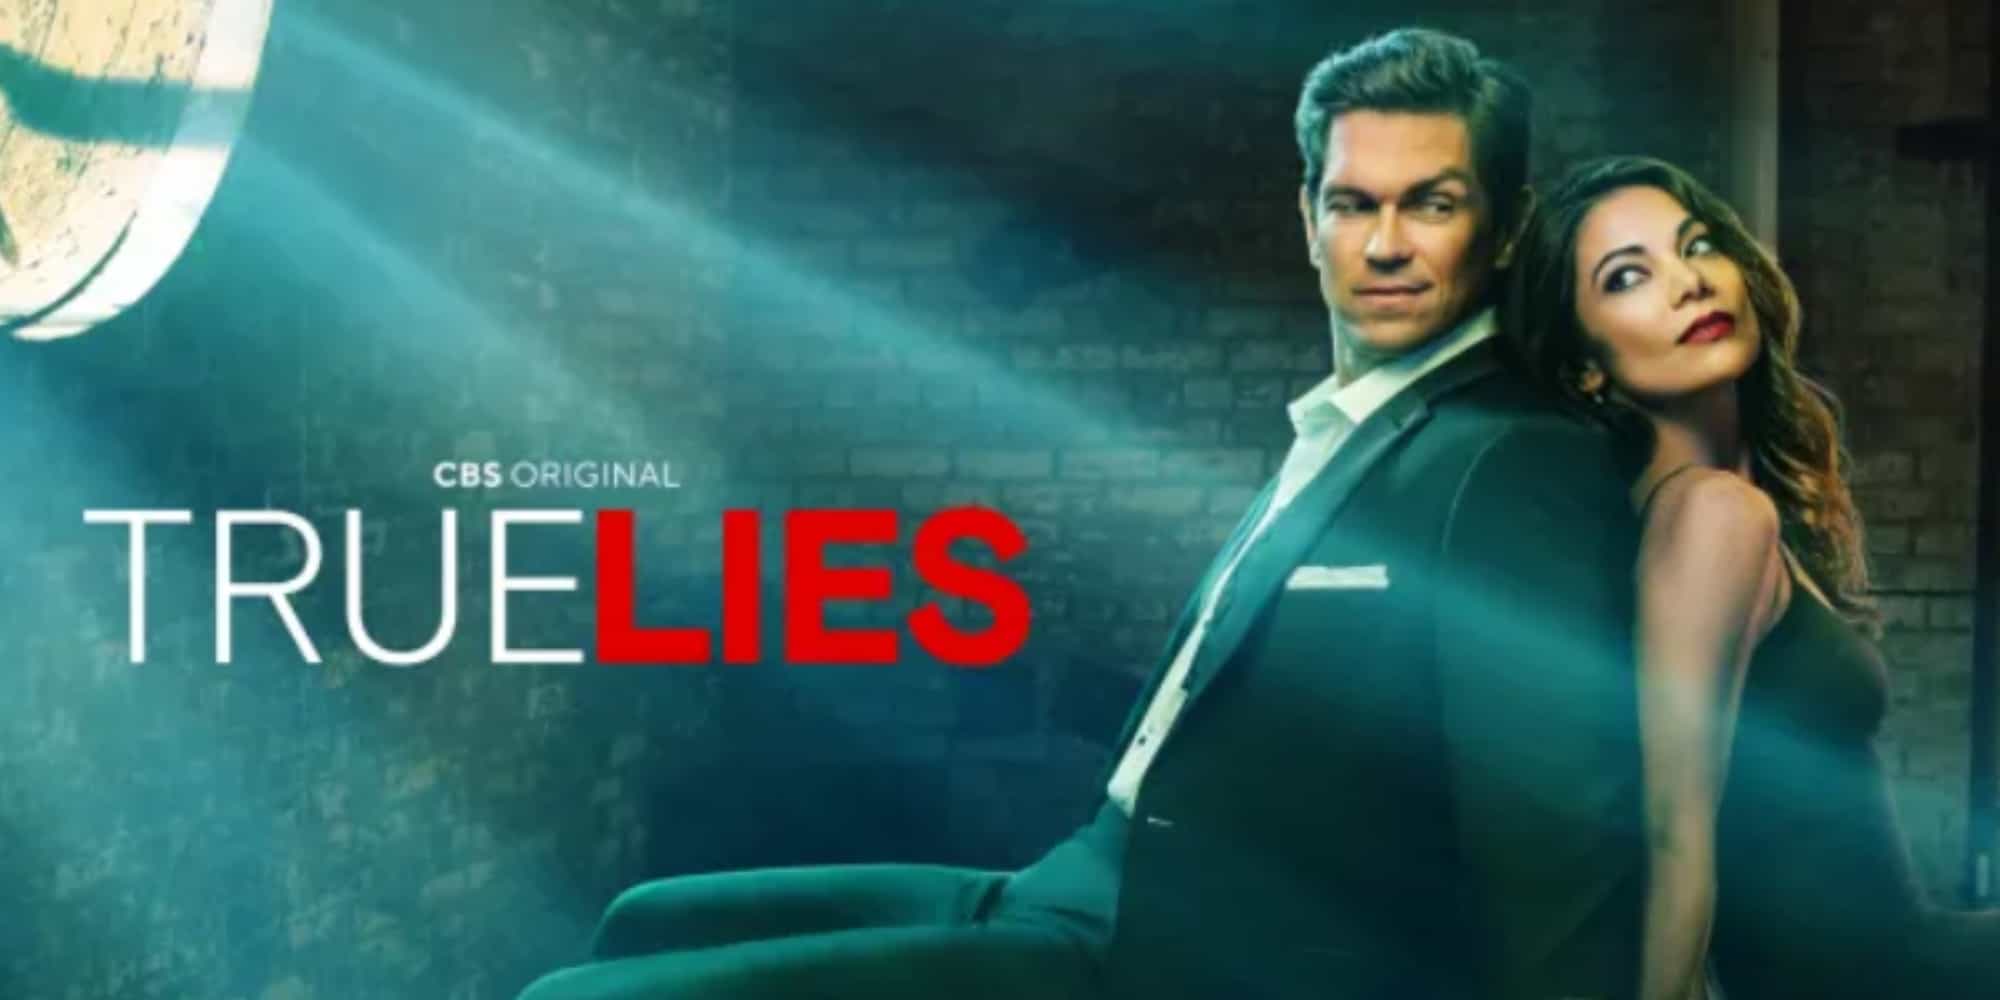 How To Watch True Lies Episodes?